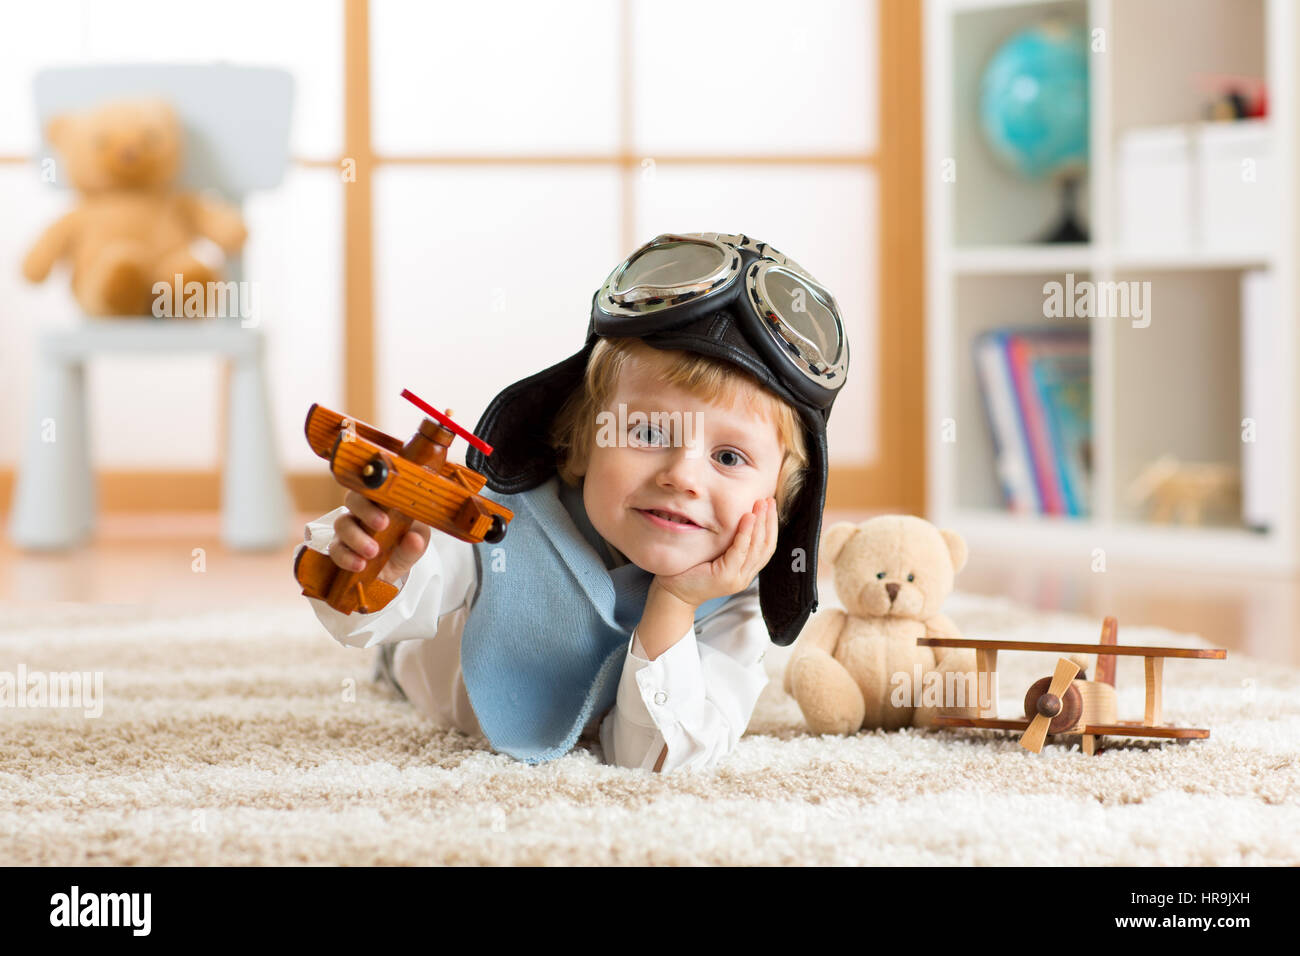 Ritratto di piccolo ragazzo giocando con aereo in legno Foto Stock